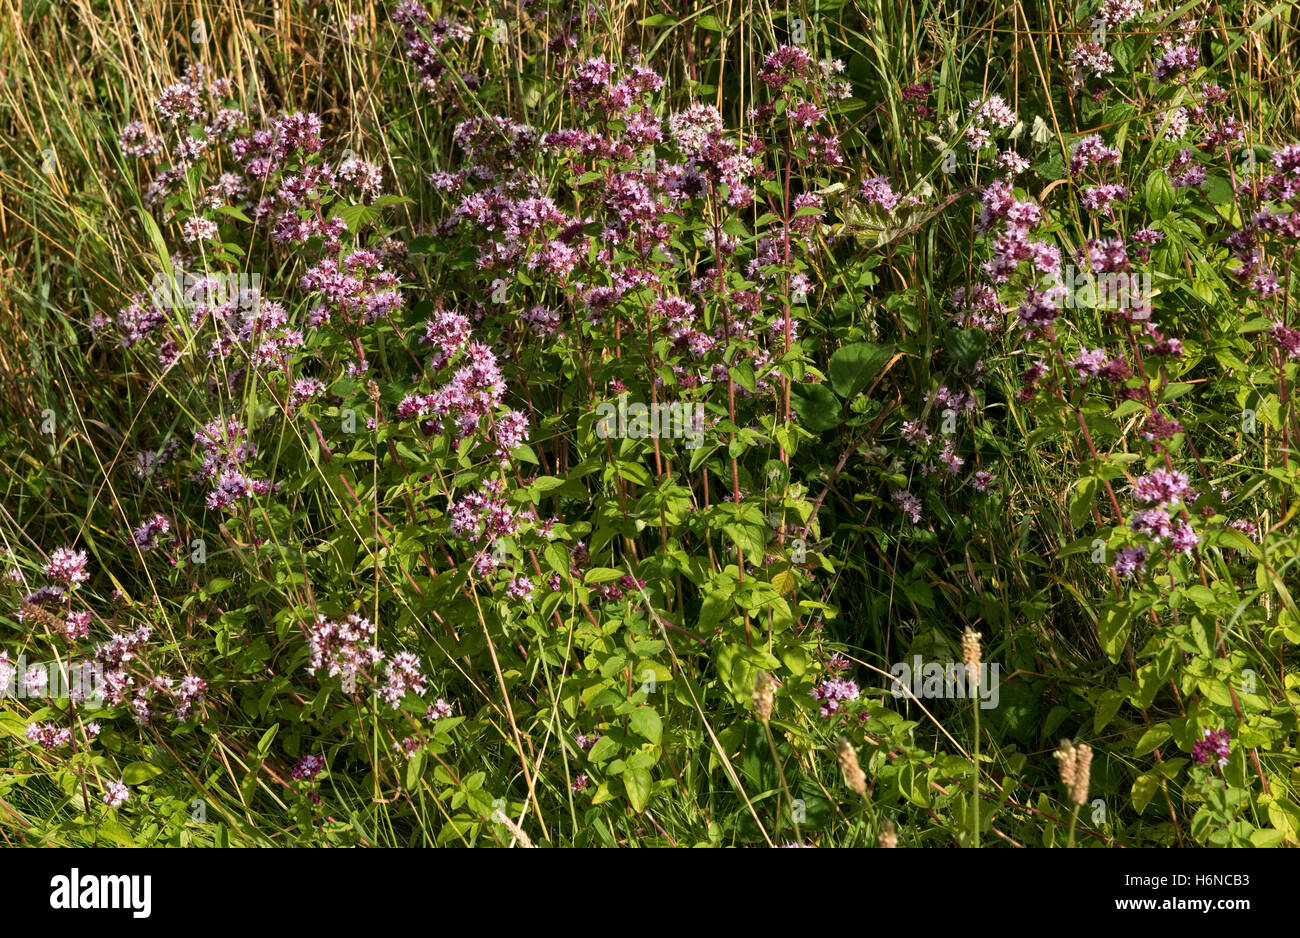 Wilden Majoran oder Oregano, Origanum Vulgare, blühende Pflanzen auf Downland Grünland, Berkshire, August Stockfoto